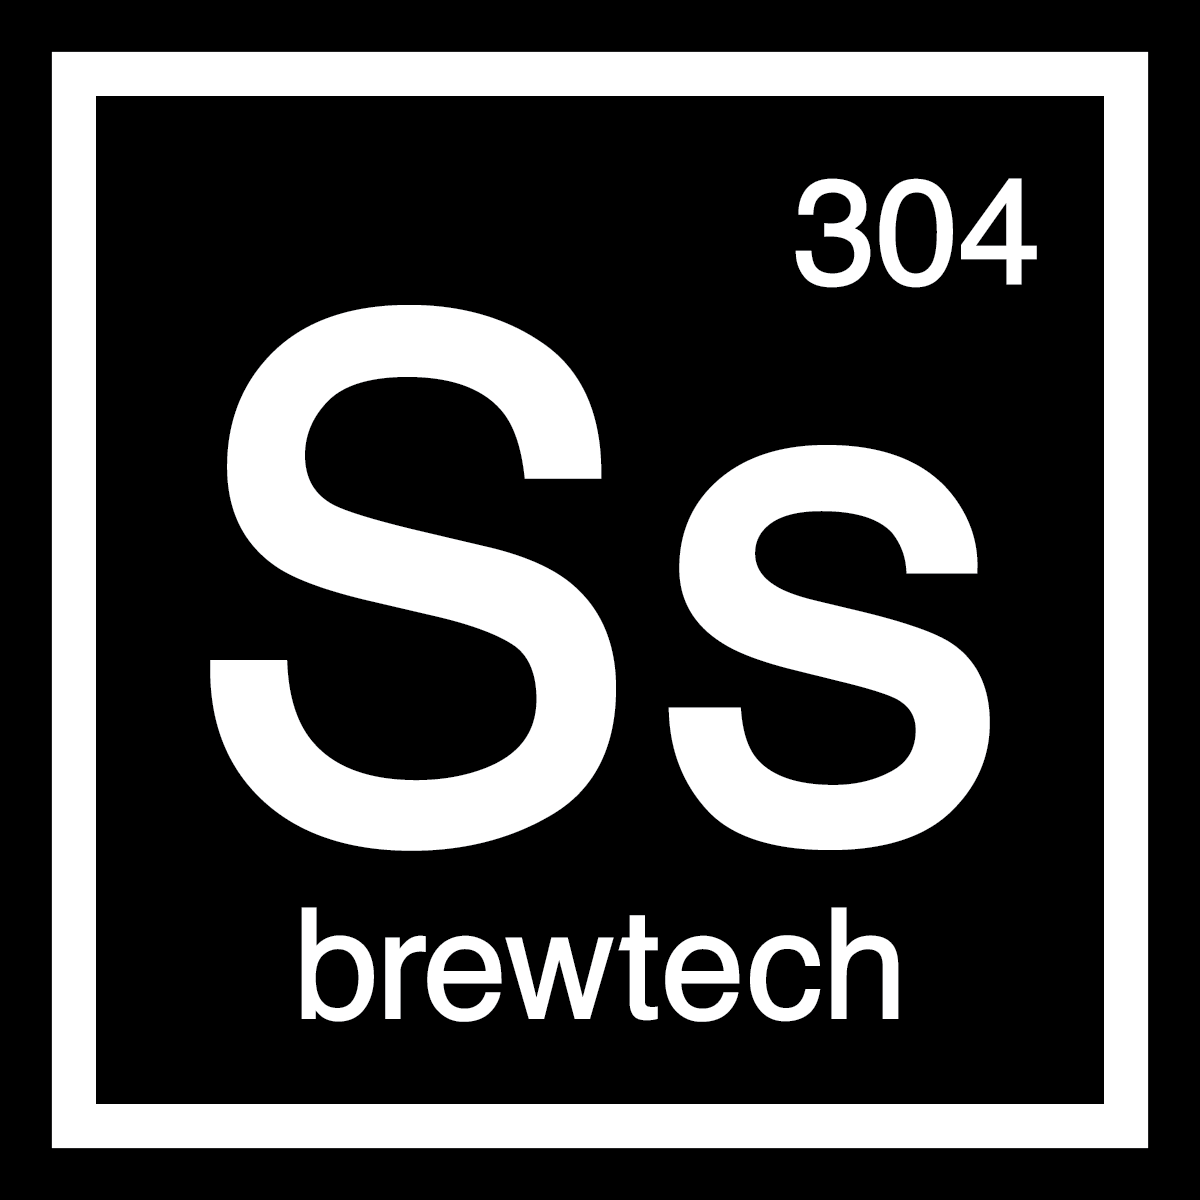 Ss Brewtech